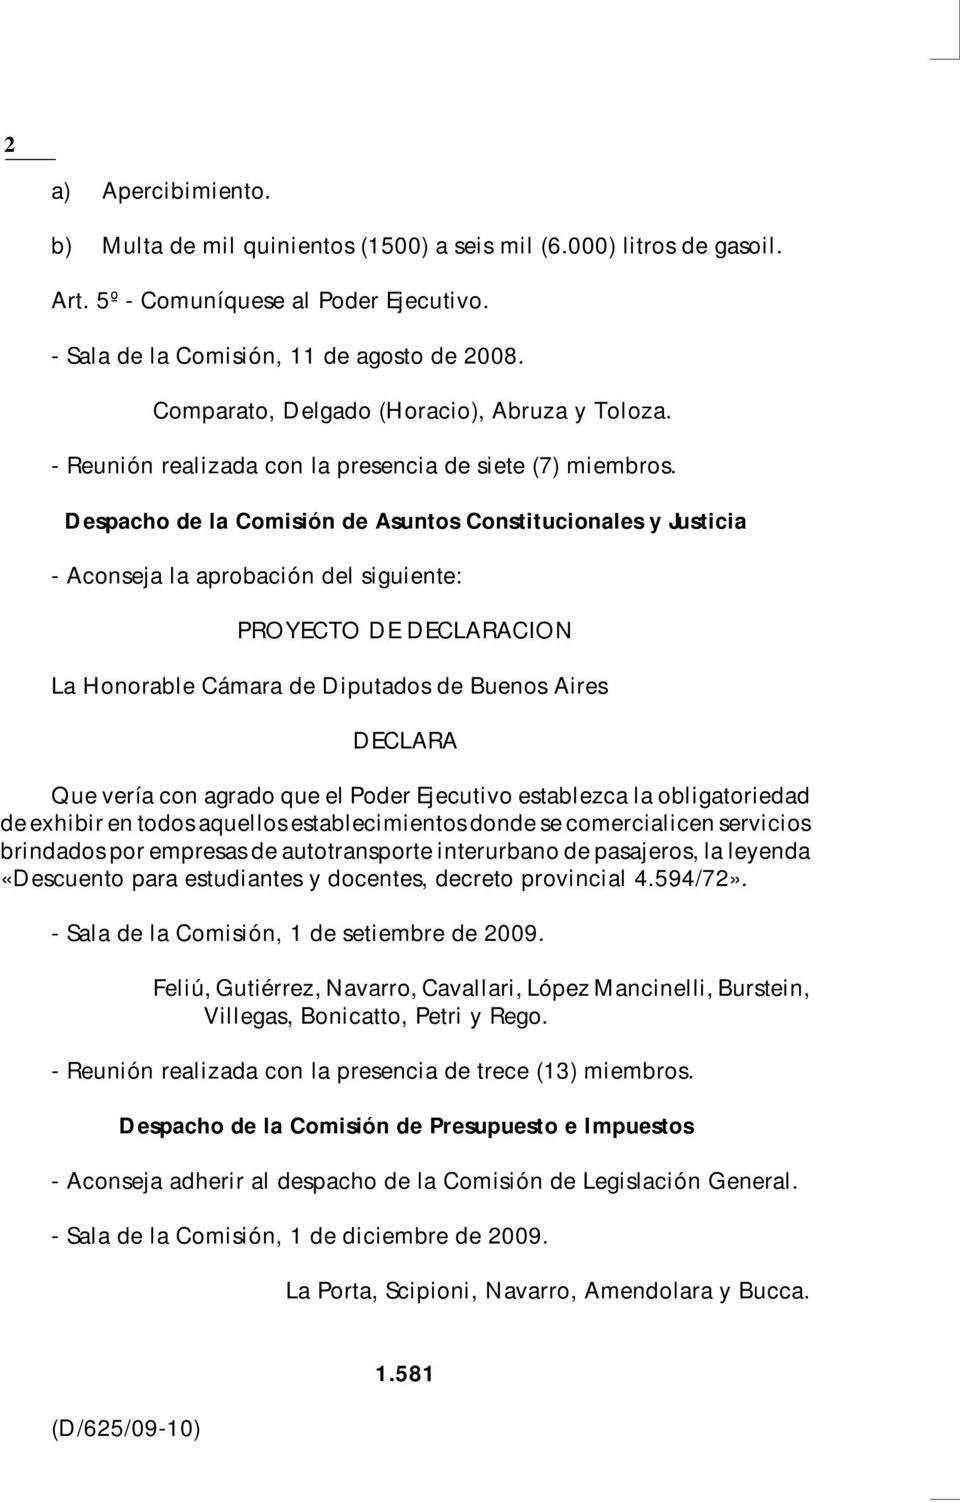 Despacho de la Comisión de Asuntos Constitucionales y Justicia - Aconseja la aprobación del siguiente: PROYECTO DE DECLARACION La Honorable Cámara de Diputados de Buenos Aires DECLARA Que vería con